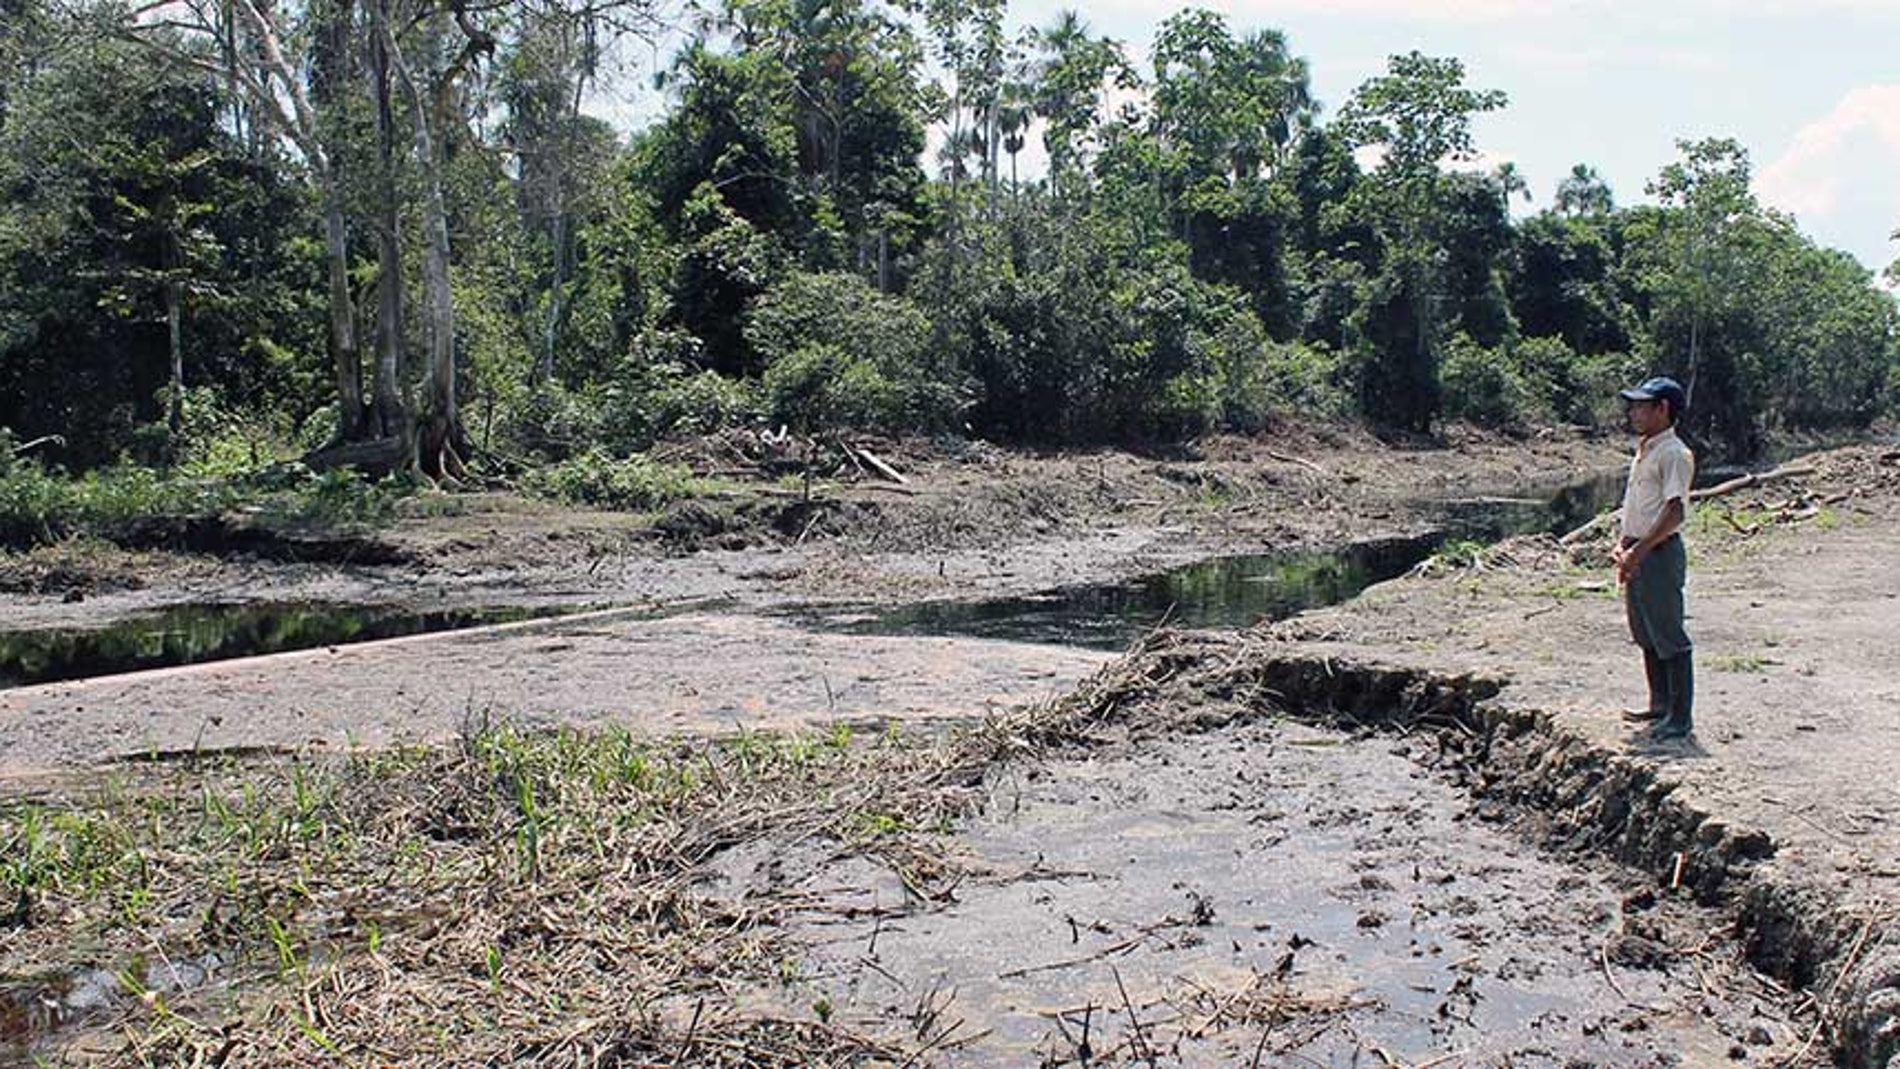 Río de Cuninico (Loreto, Perú) un año después del derrame de petróleo del oleoducto Norperuano. Diciembre, 2015. Autora: Cristina O'Callaghan Gordo/ISGlobal